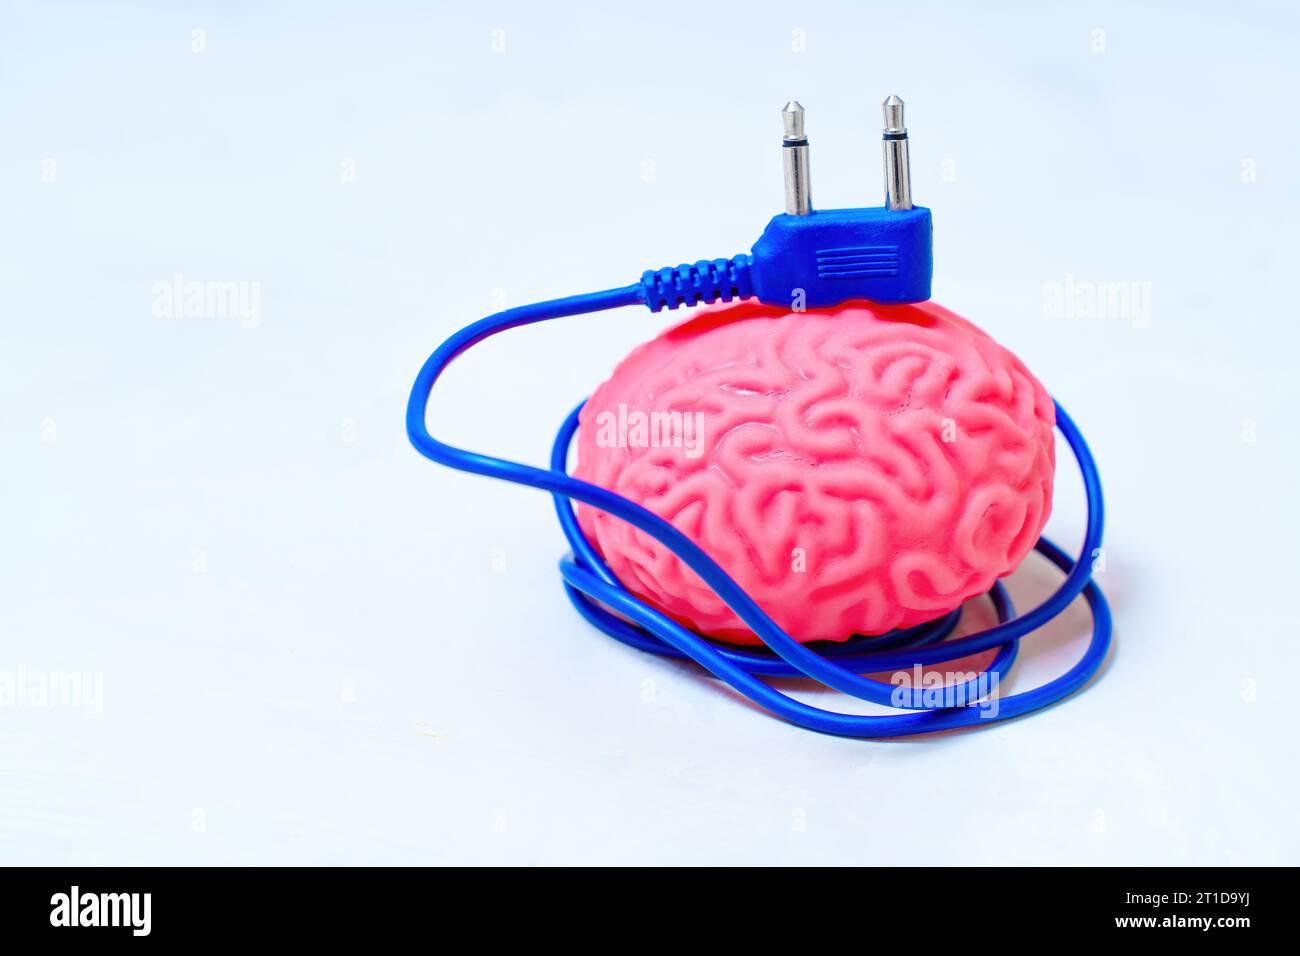 Modello di cervello umano con cavo di alimentazione blu collegato. Concetto correlato all'aumento della mente. Foto Stock